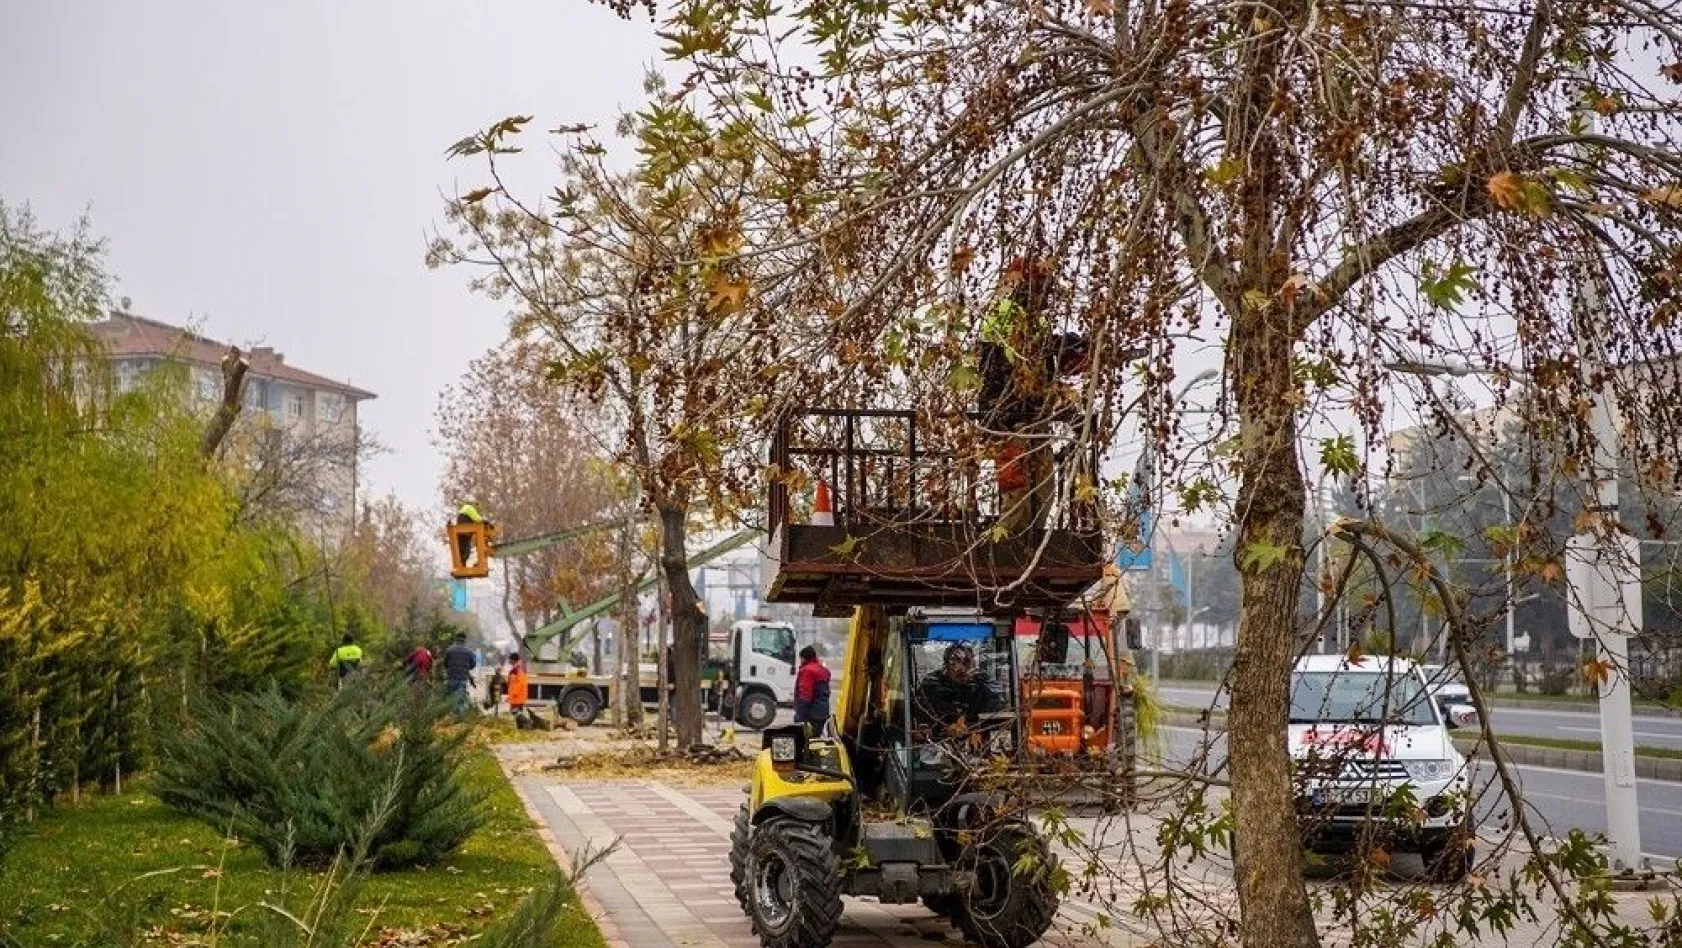 Malatya'da ağaç budama çalışmaları devam ediyor
